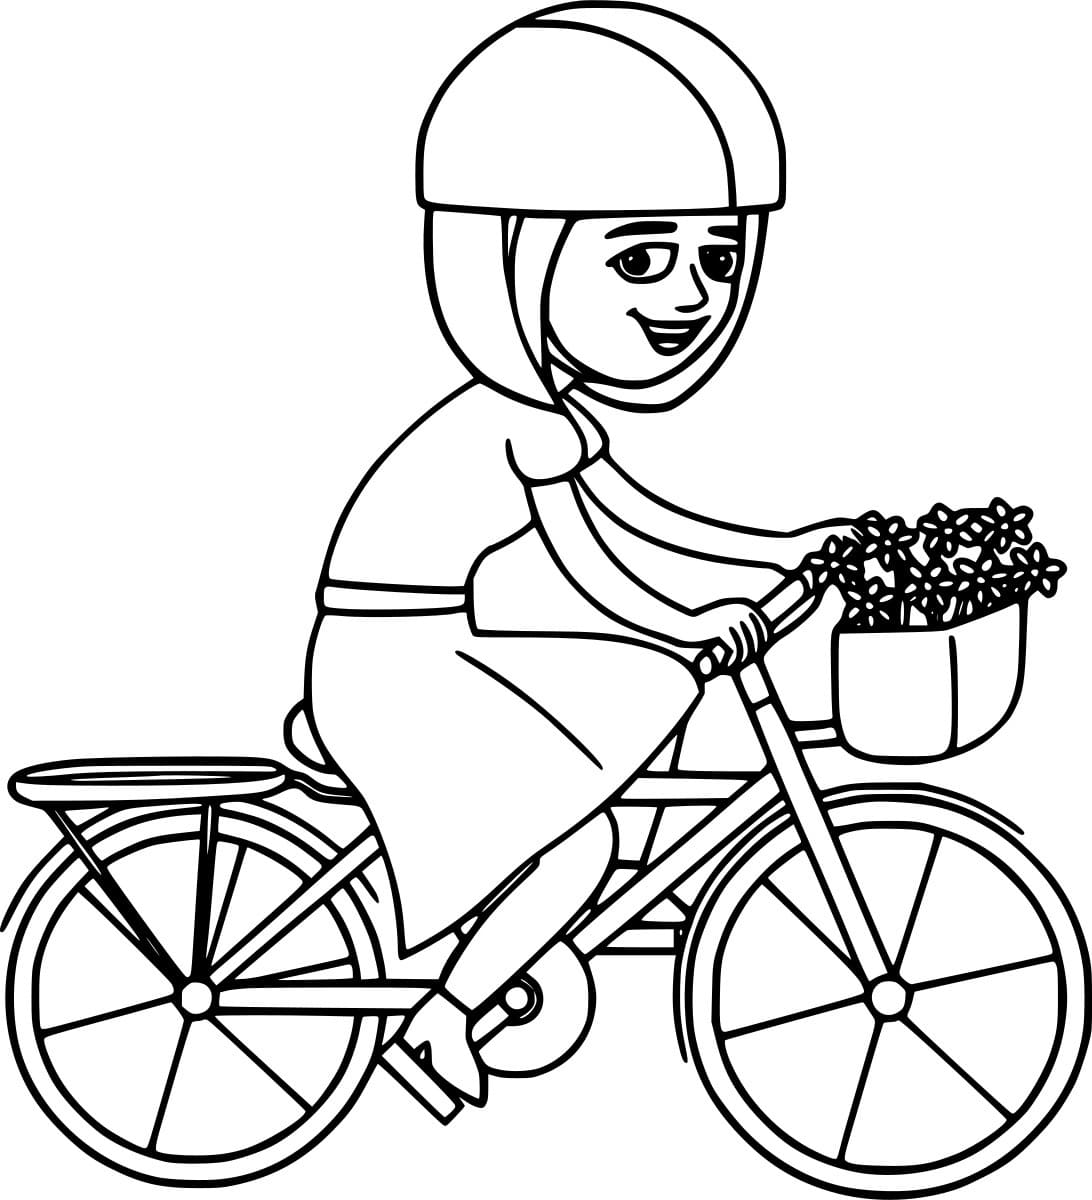 Mädchen auf einem Fahrrad